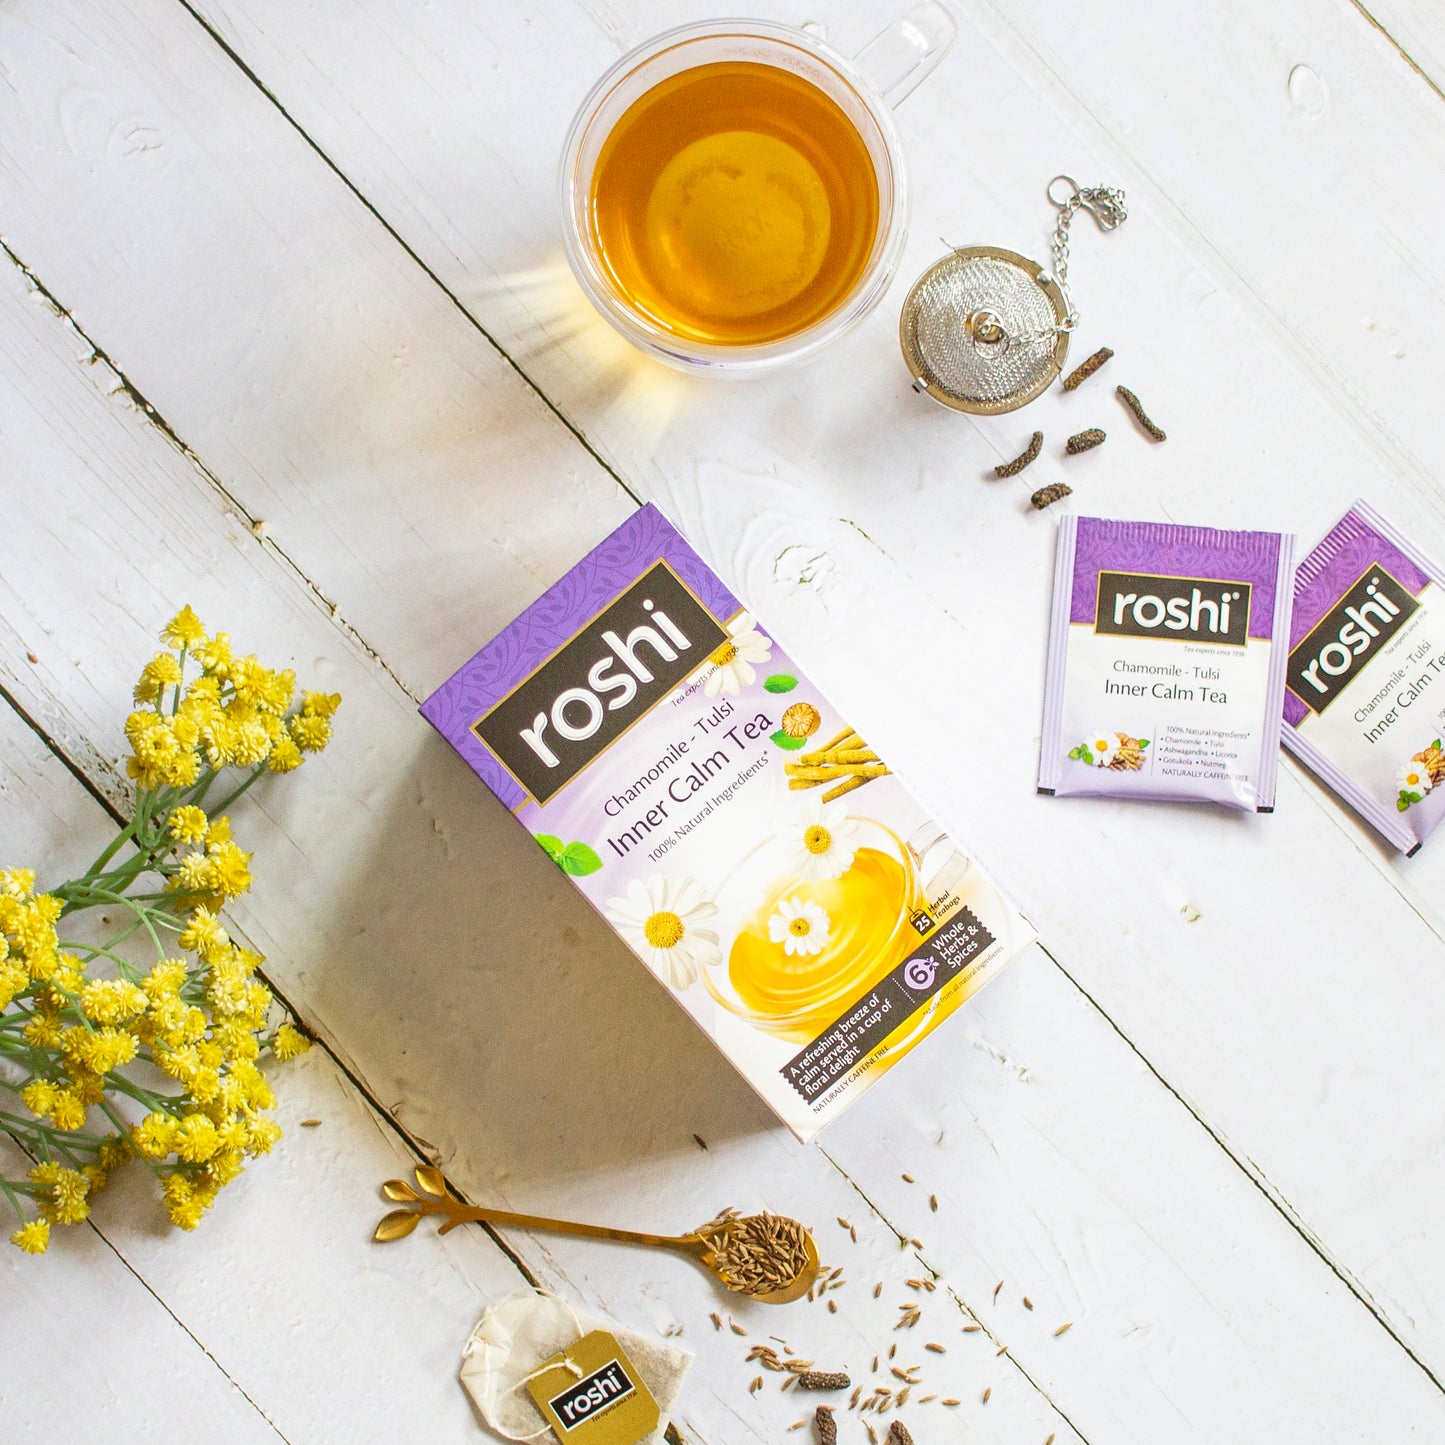 Roshi Inner Calm Tea | 25 teabags